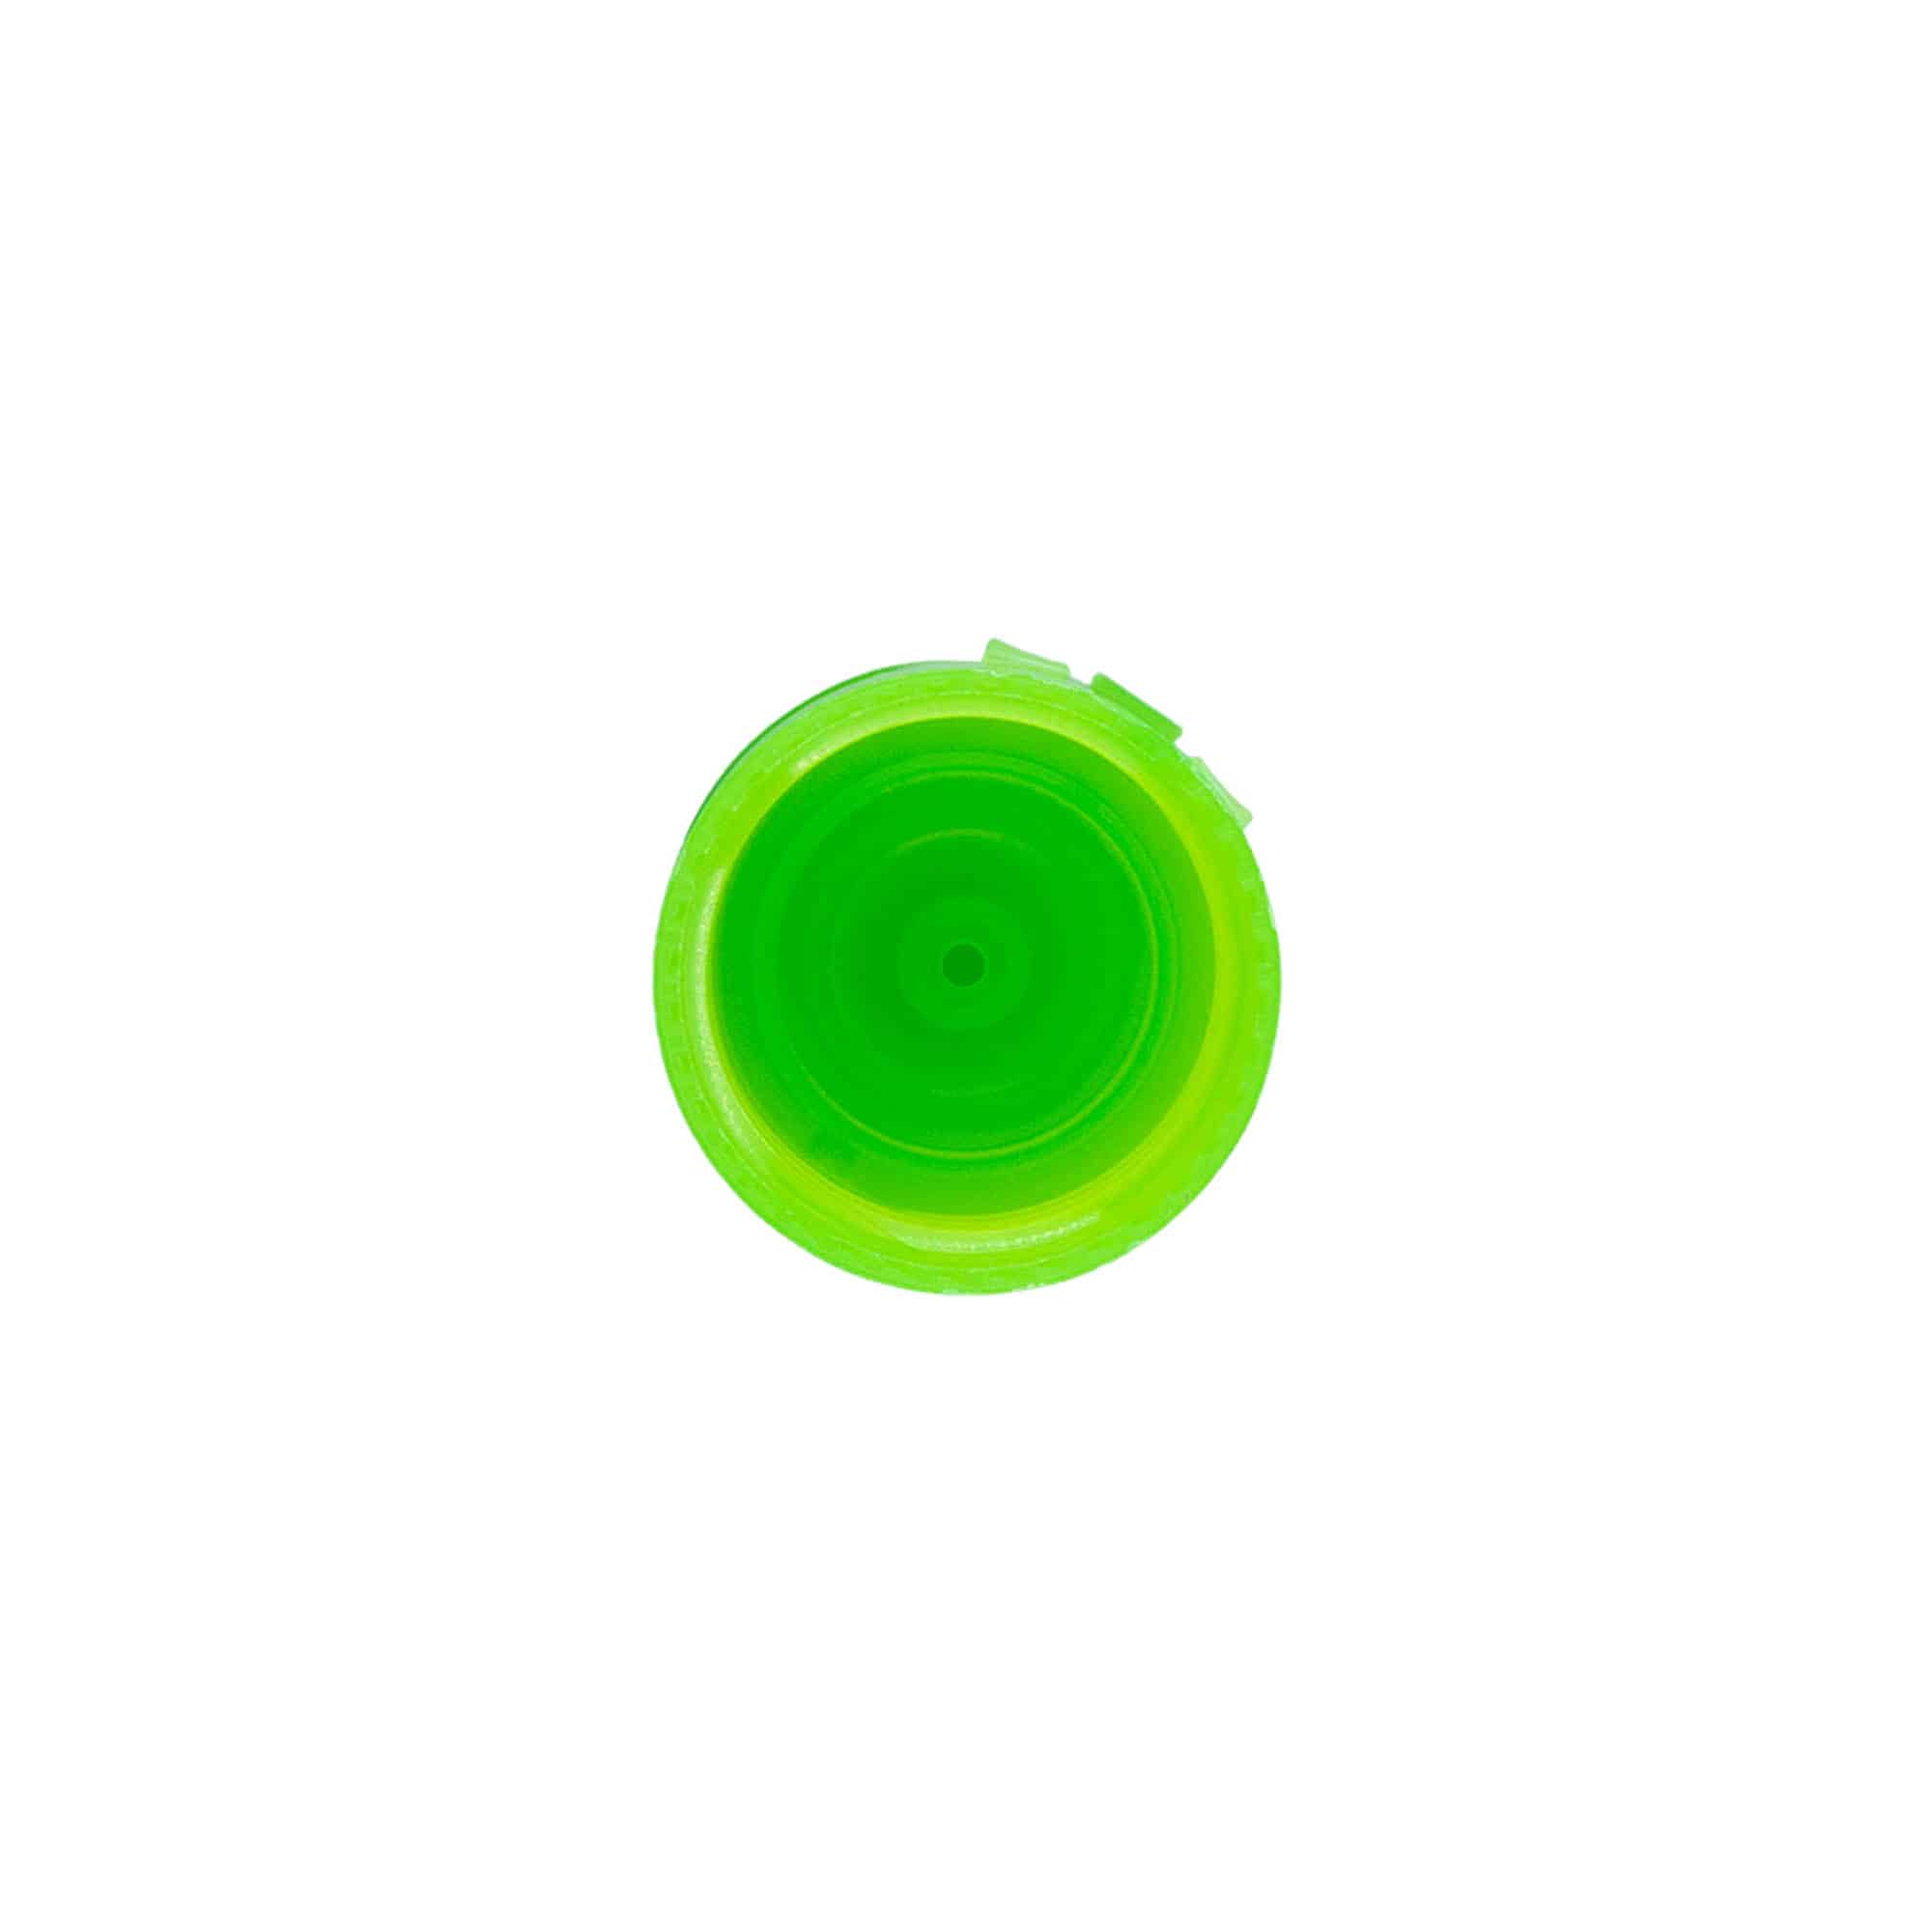 Zakrętka uchylna, tworzywo sztuczne PP, kolor zielony, do zamknięcia: GPI 24/410